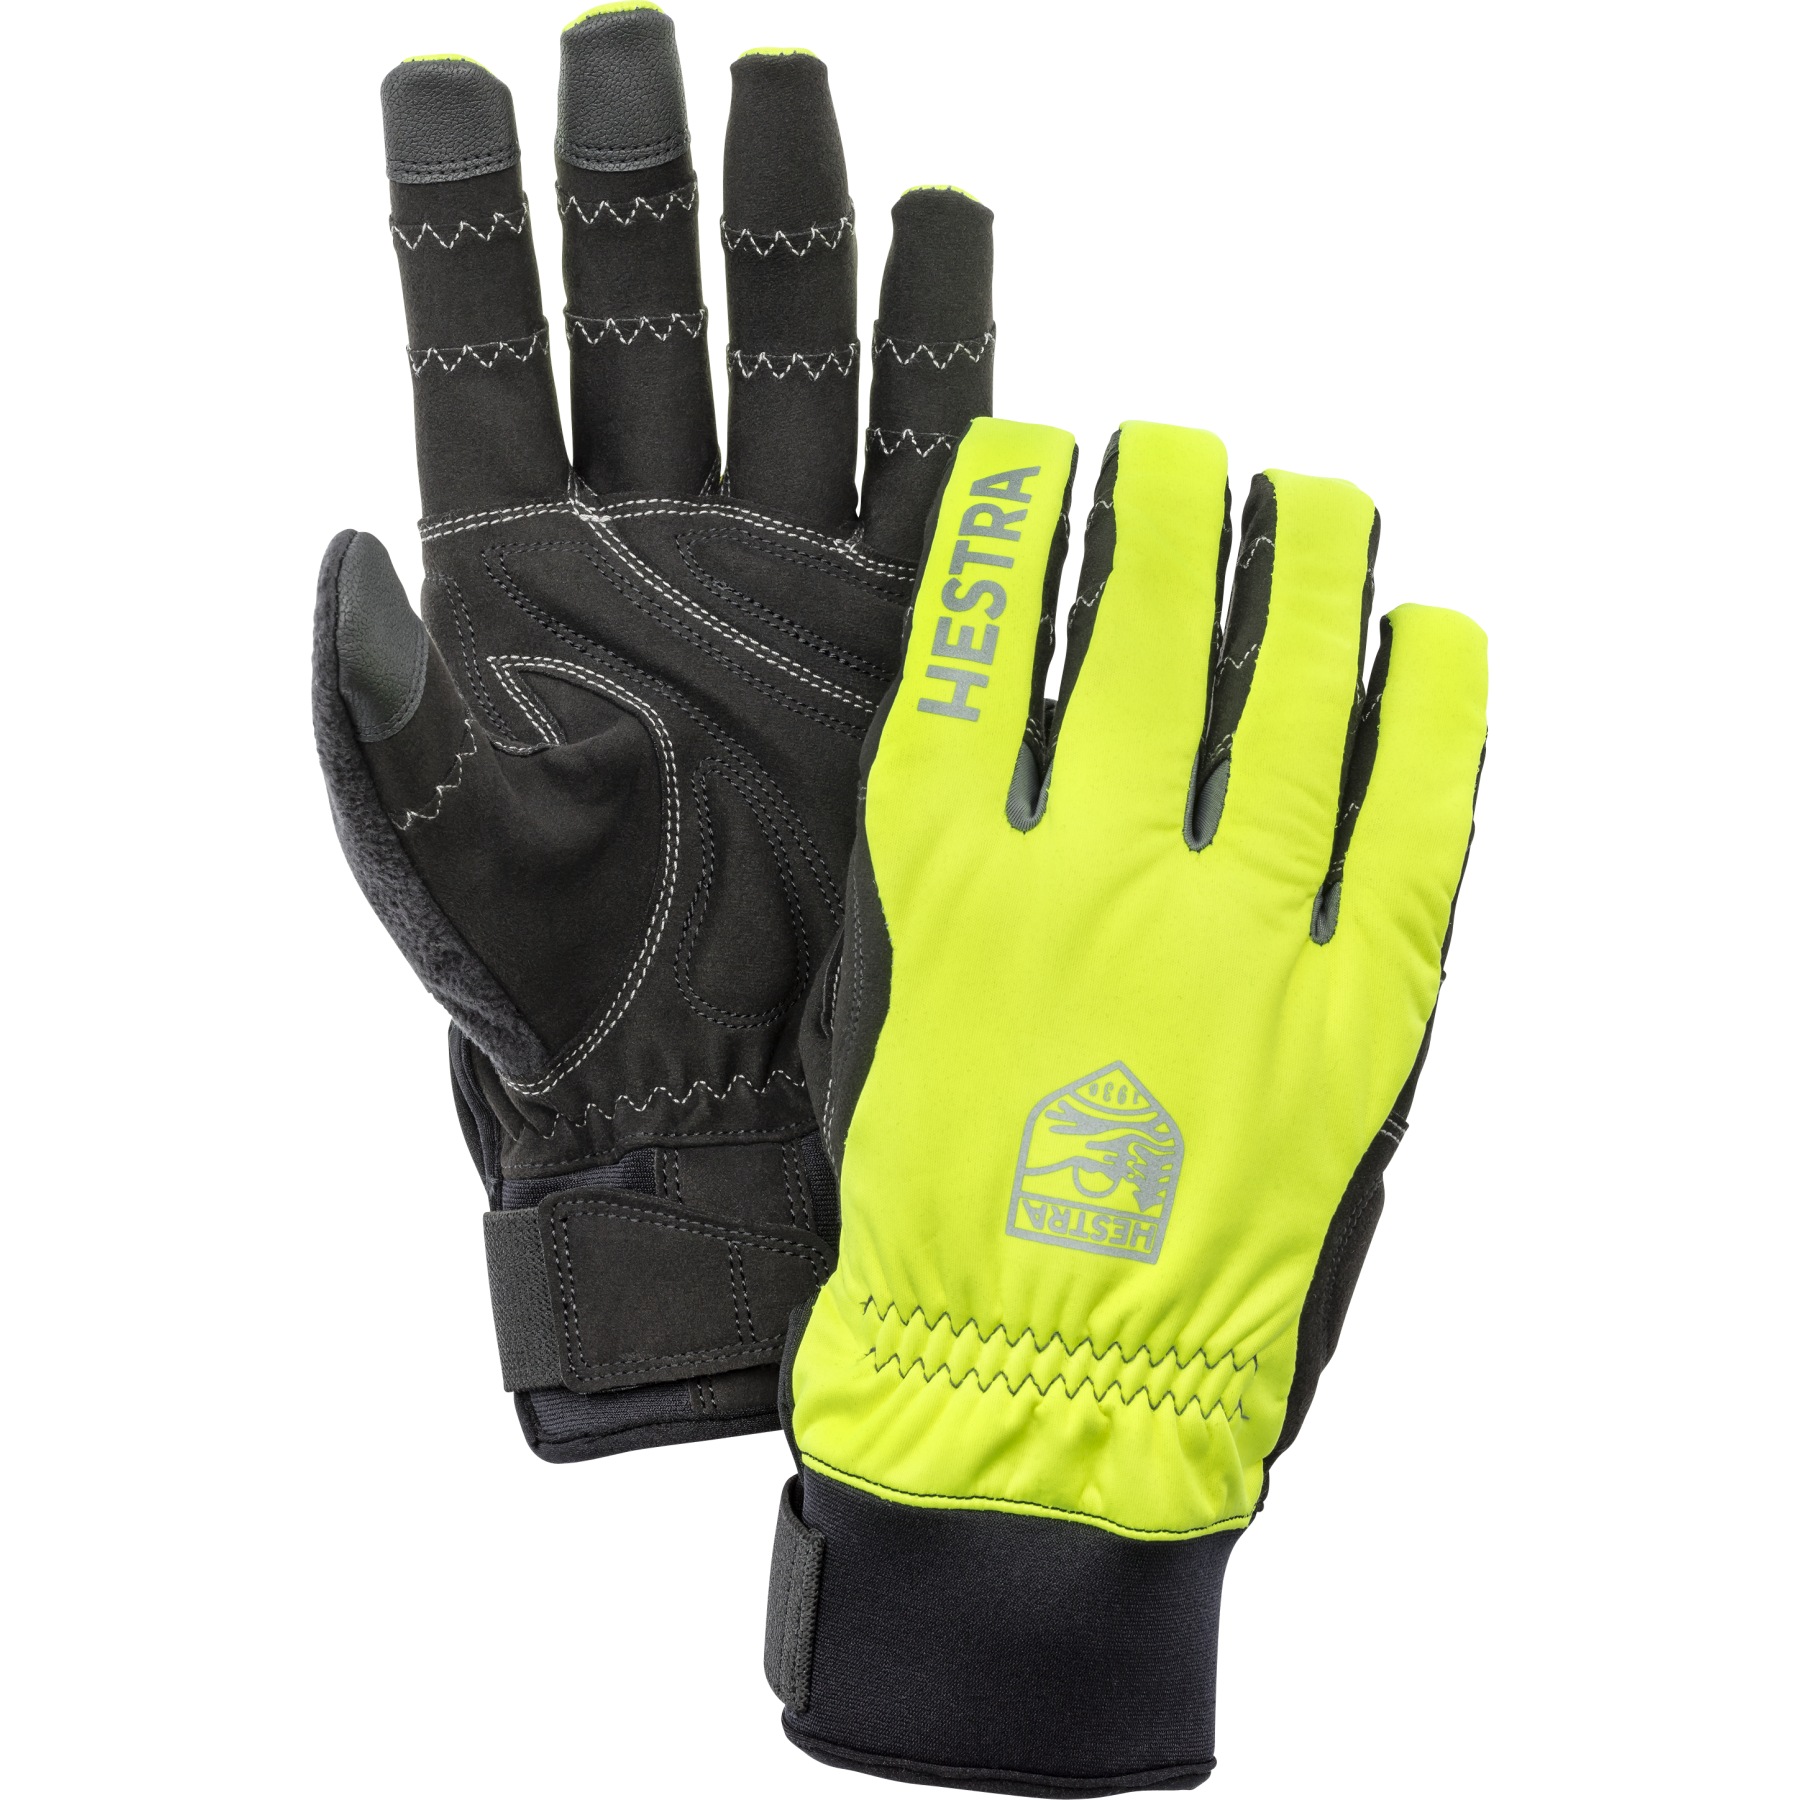 Image of Hestra Ergo Grip Long - 5 Finger Bike Gloves - yellow / black